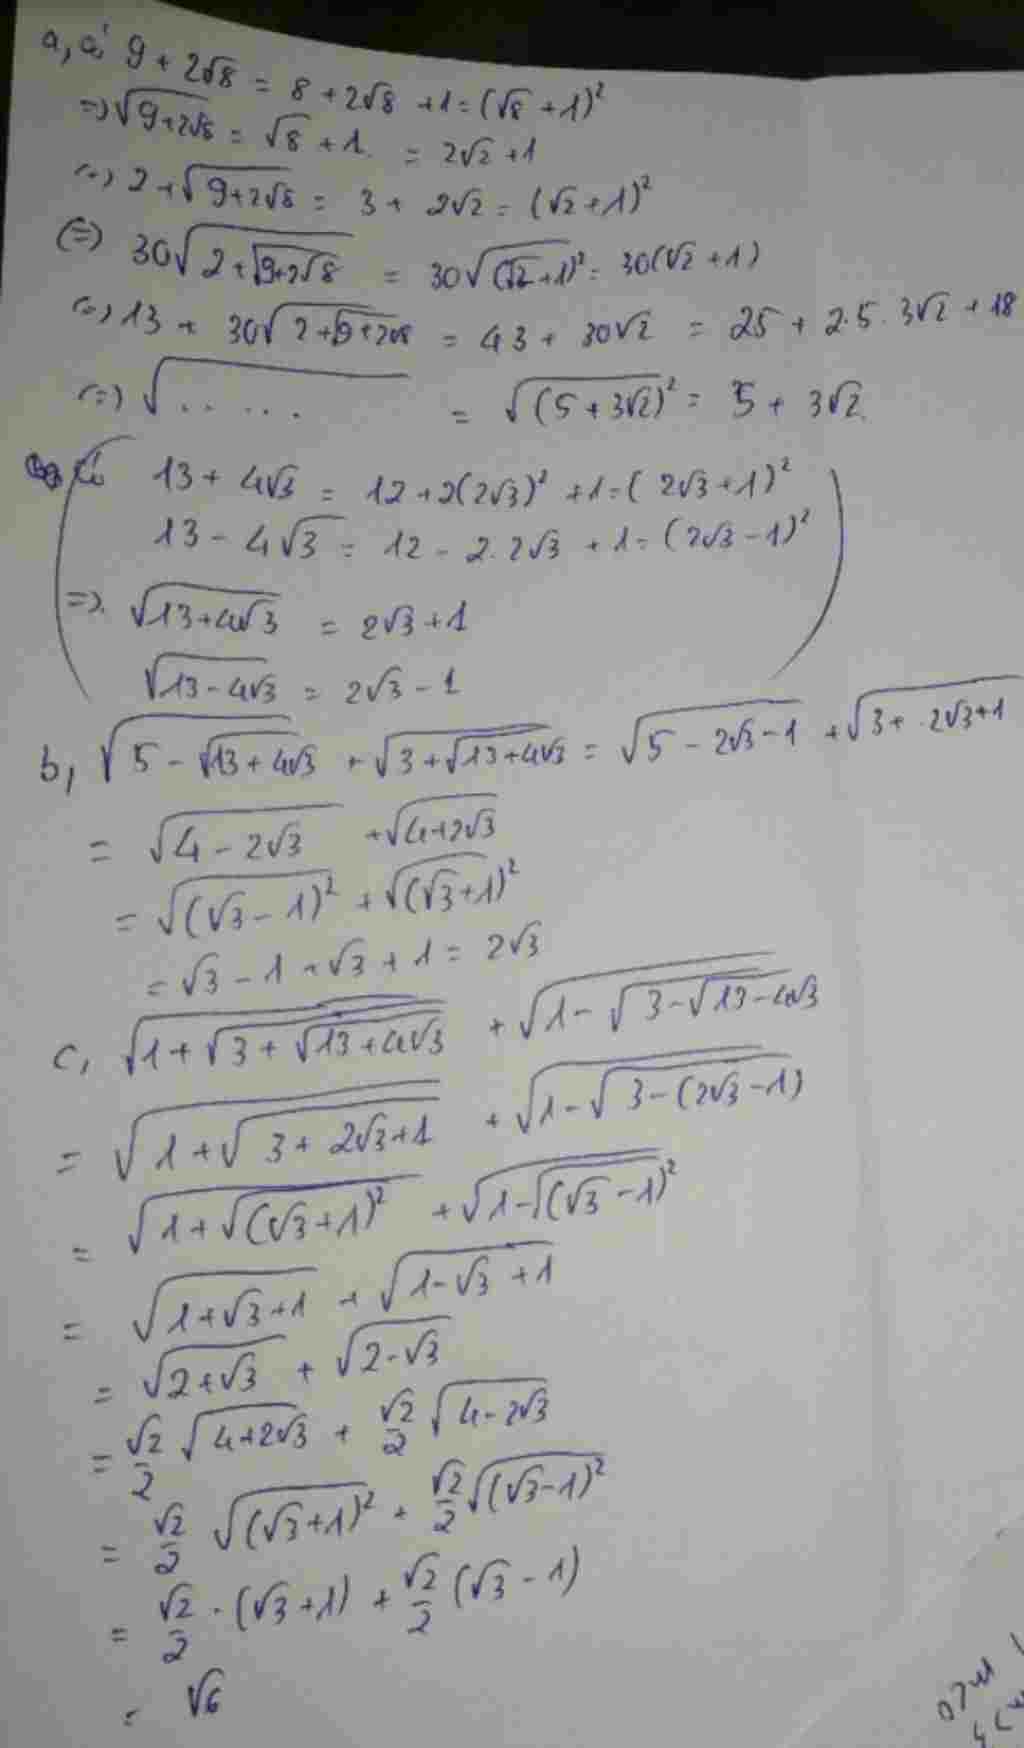 rut-gon-a-sqrt-2-13-30-sqrt-2-2-sqrt-2-9-2-sqrt-2-8-b-sqrt-2-5-sqrt-2-13-4-sqrt-2-3-sqrt-2-3-sqr